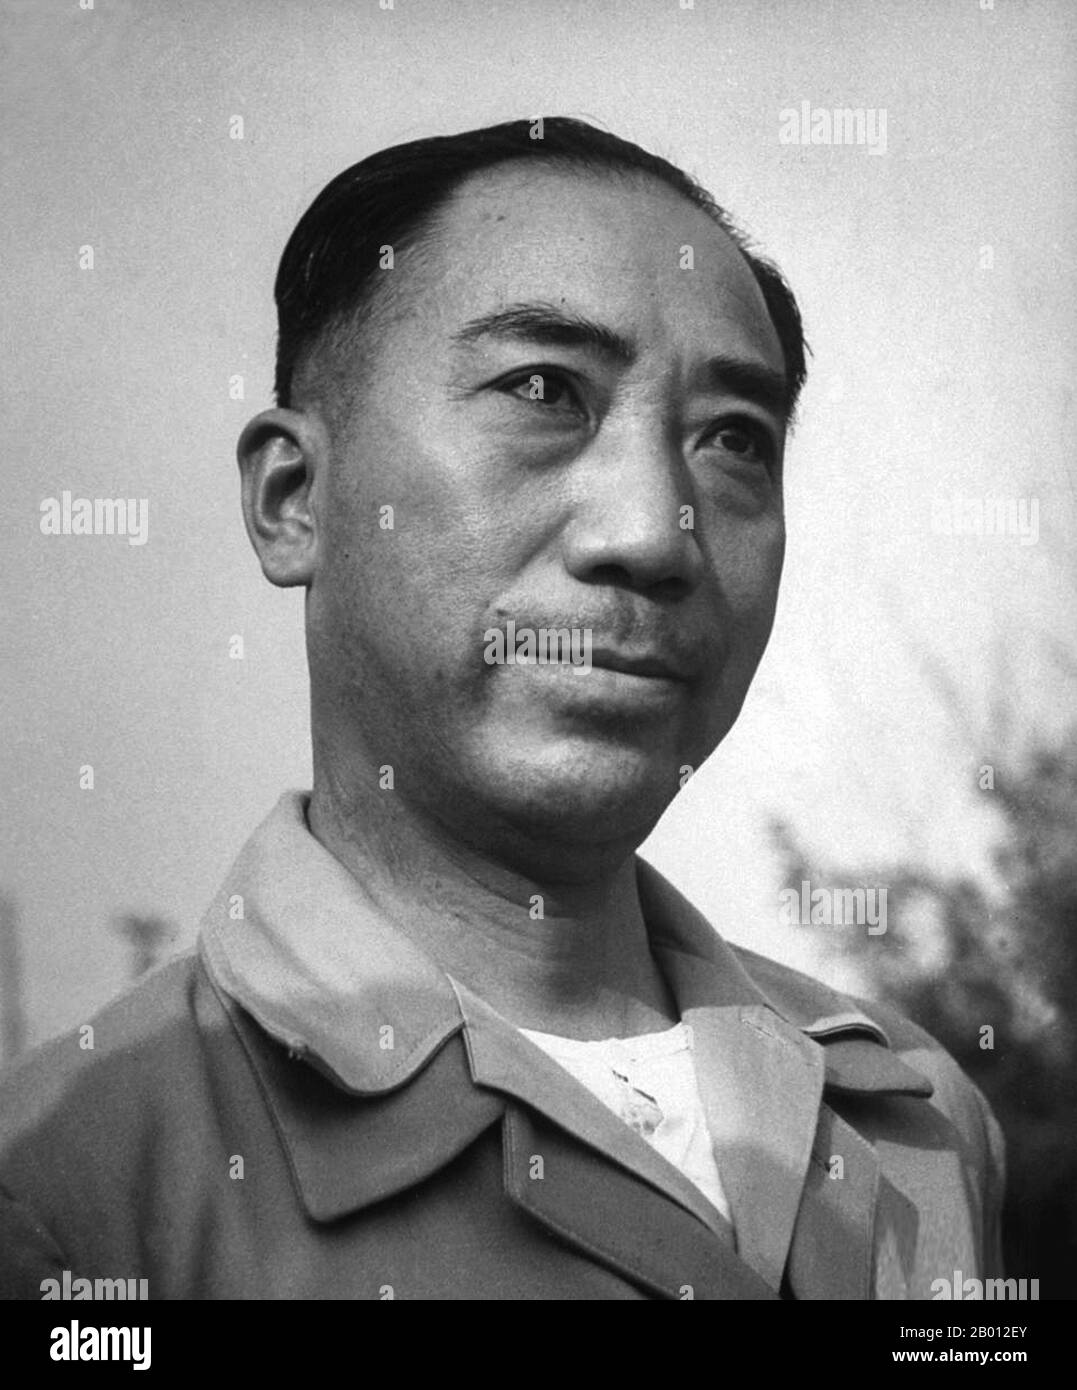 China: Generalmajor Dai Li ( (28. Mai 1897 - 17. März 1946) Leiter des militärischen Nachrichtendienstes Kuomintang und rechter Mann von Chiang Kai-shek. Als Chef des Geheimdienstes der Kuomintang (KMT) Armee in China half Dai Li 1928 bei der Entwicklung der modernen chinesischen Geheimdienstorganisation. Er wurde einer der mächtigsten und gefürchtetsten Männer in China. Dai war auch der Leiter der Blue Shirts Society, einer faschistischen Organisation, die Sicherheits- und Geheimdienstarbeit für Chiang geleistet hat. Er starb 1946 bei einem Platzunfall, möglicherweise arrangiert von seinem kommunistischen Amtskollegen, dem Chef des Geheimdienstes der KPCh, Kang Sheng. Stockfoto